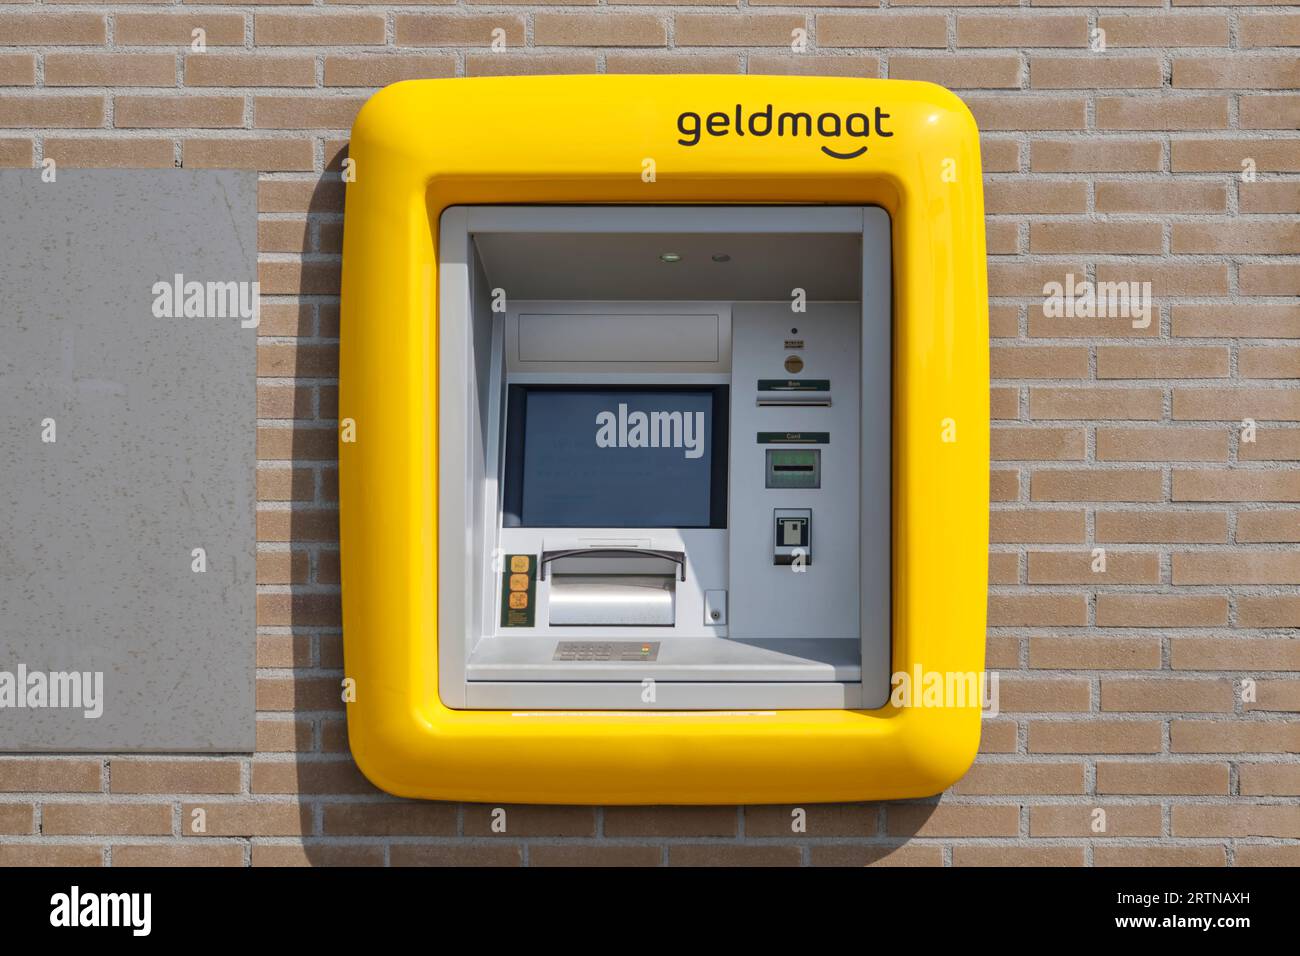 Geldmaat-Logo am Geldautomaten. Geldmaat ist ein niederländisches Unternehmen, das Geldautomaten installiert, verwaltet und unterhält und ein Joint Venture von ABN AMRO, ING und Rabobank ist Stockfoto